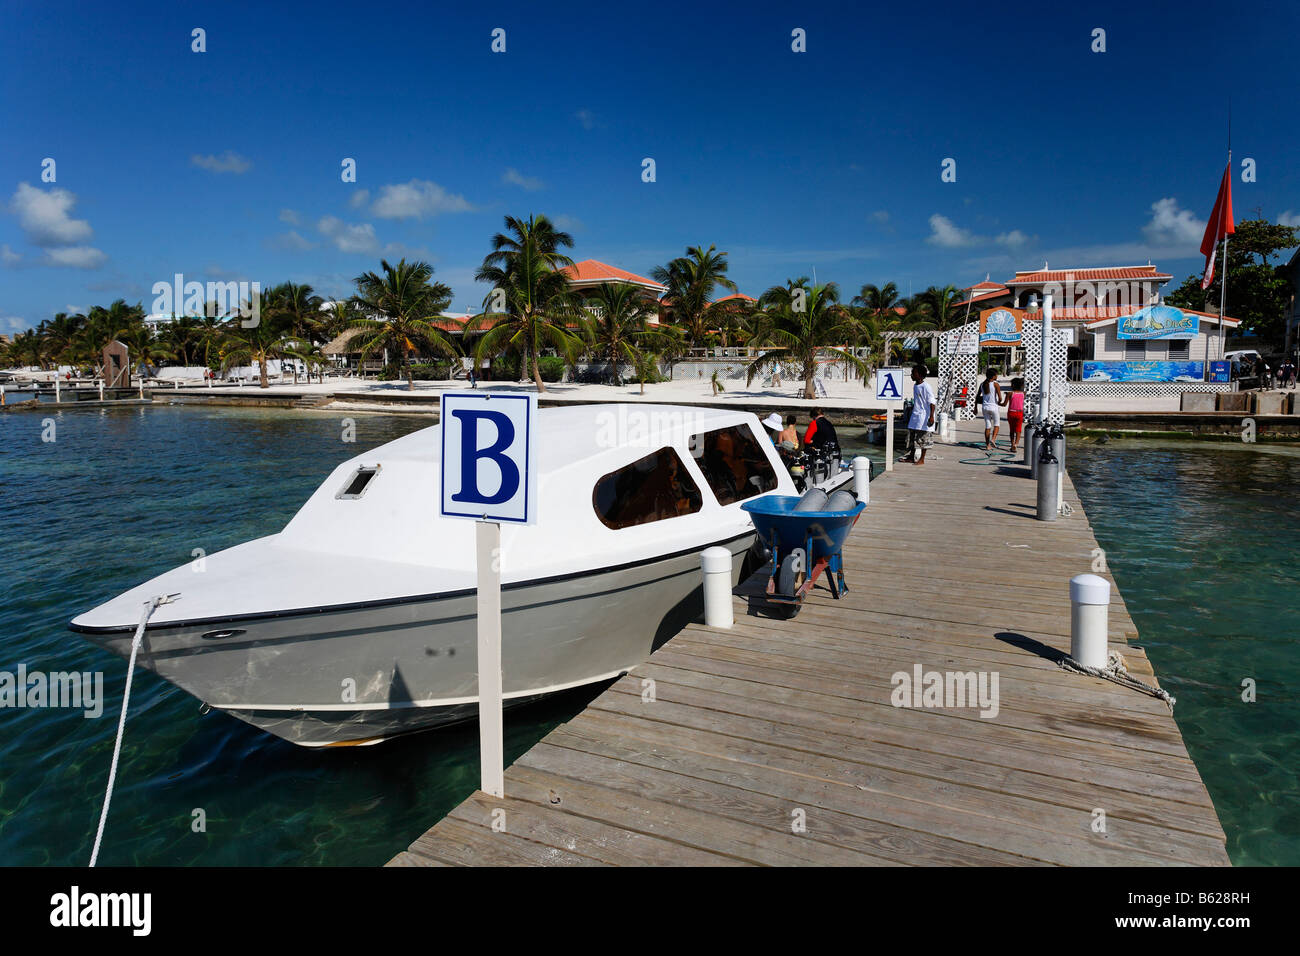 Tauchen Boot gebunden an der Pier von der Sonne Breeze Hotel, San Pedro, Ambergris Cay Insel, Belize, Mittelamerika, Karibik Stockfoto